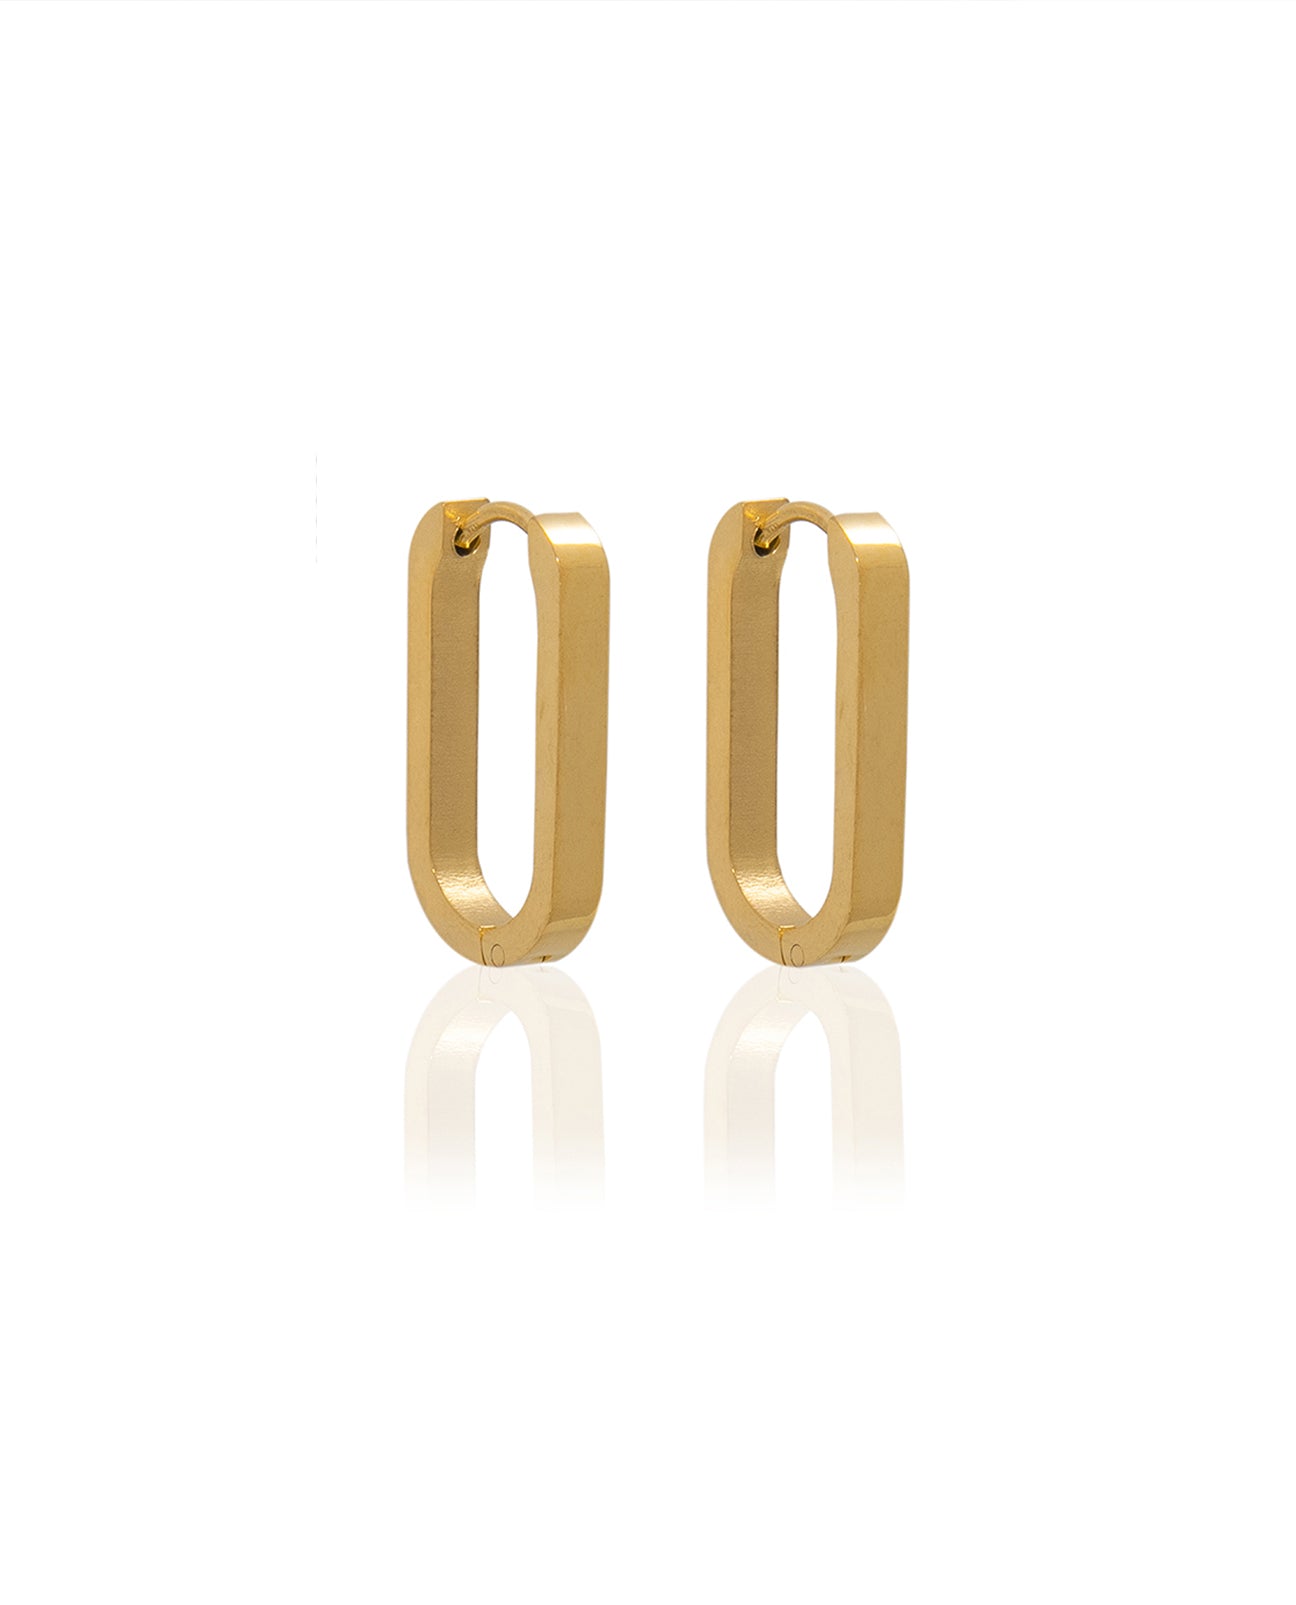 Maeve Earrings in Gold